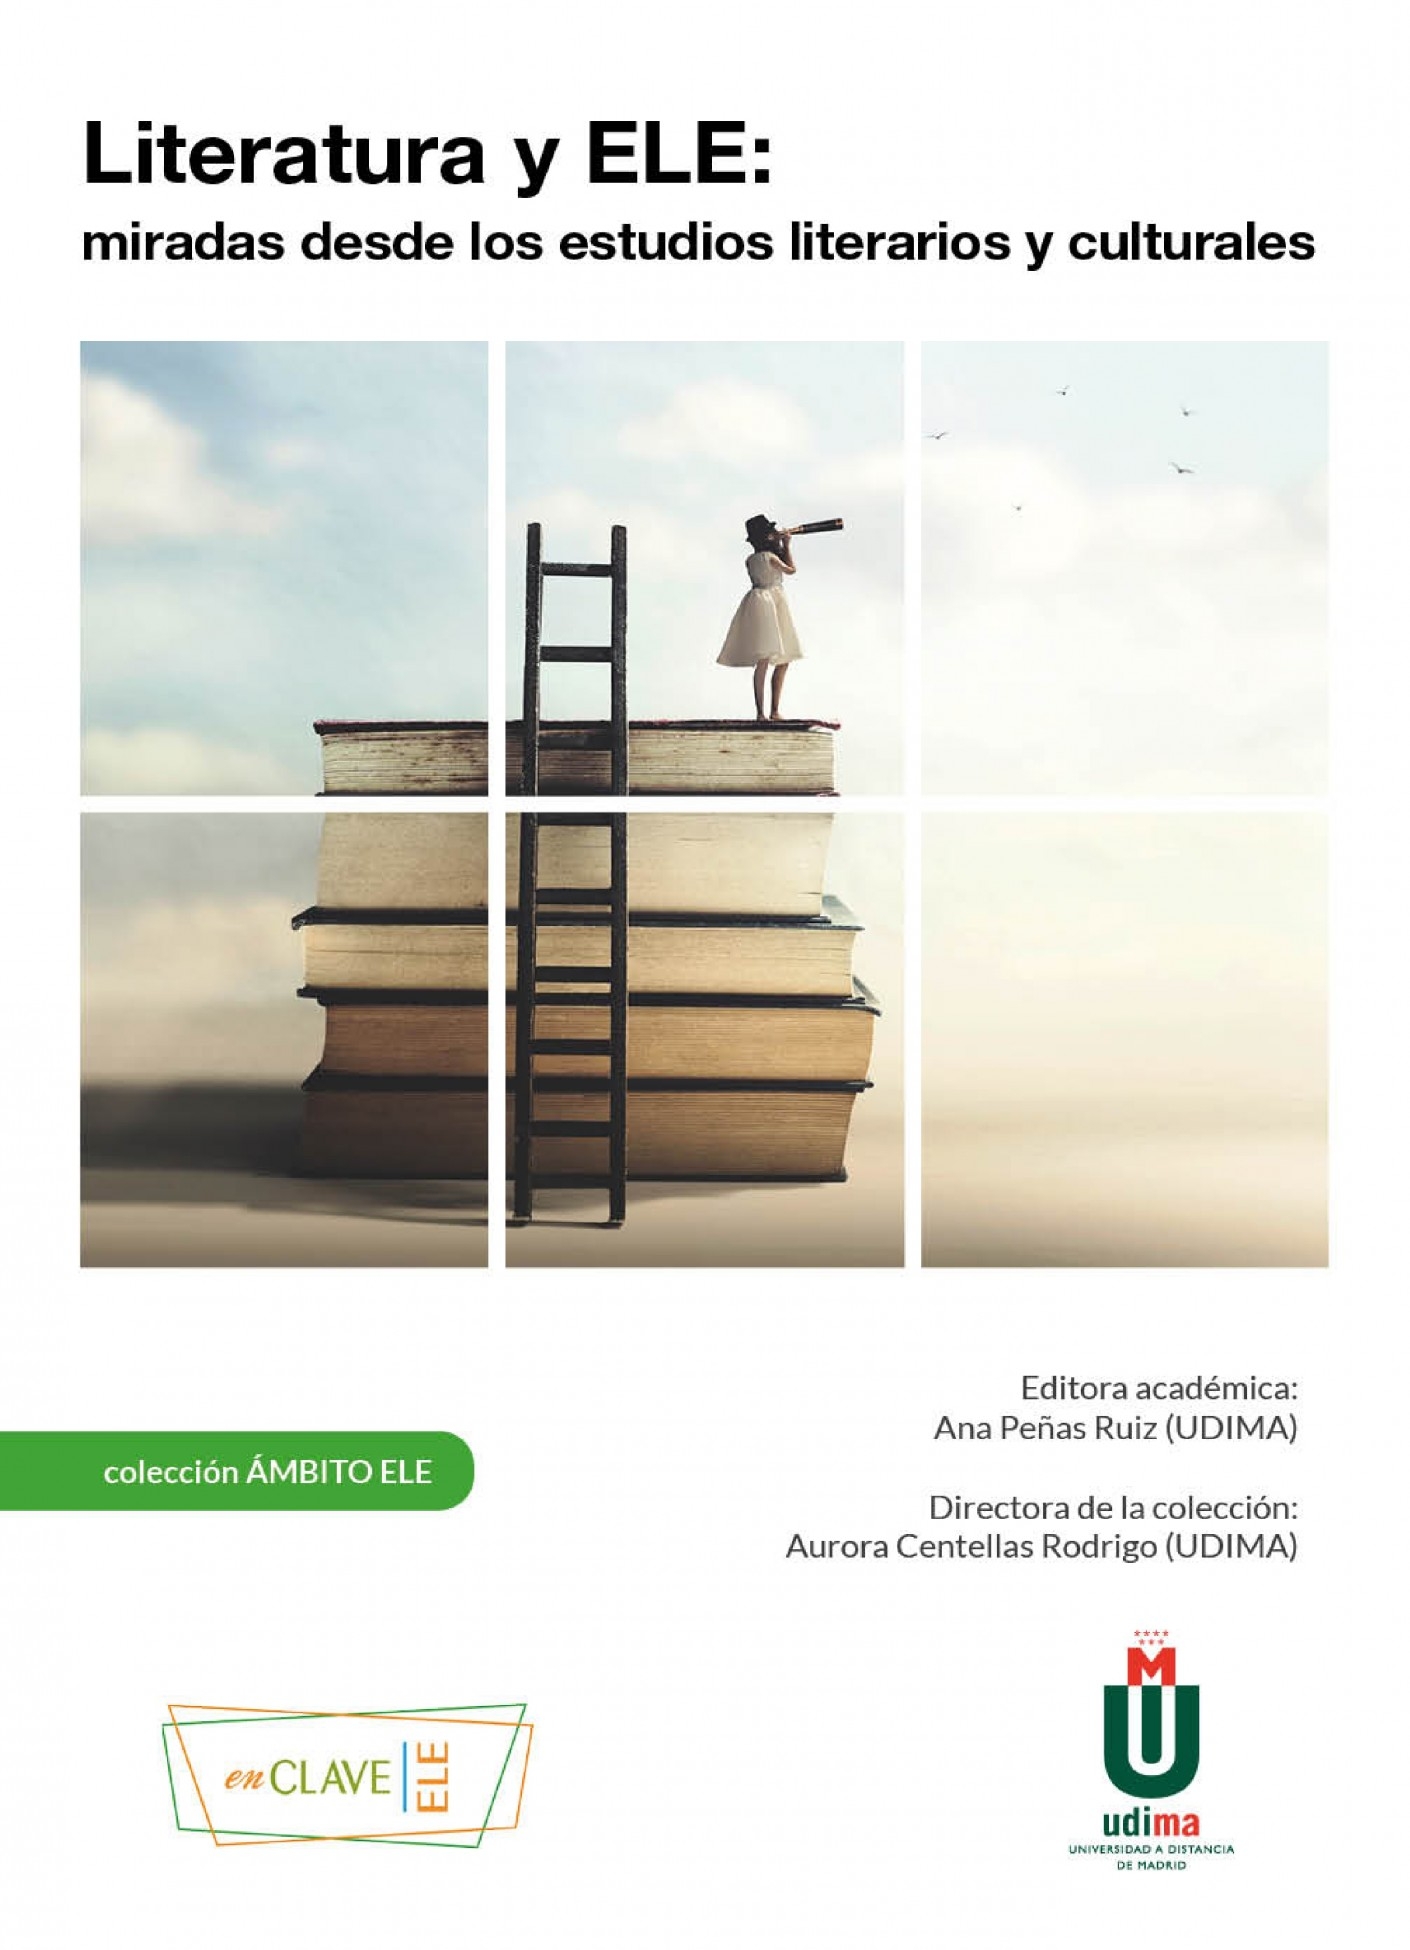 Literatura y ELE: miradas desde los estudios literarios y culturales. Madrid: enClave-ELE/UDIMA, 2021. Colección Ámbito ELE